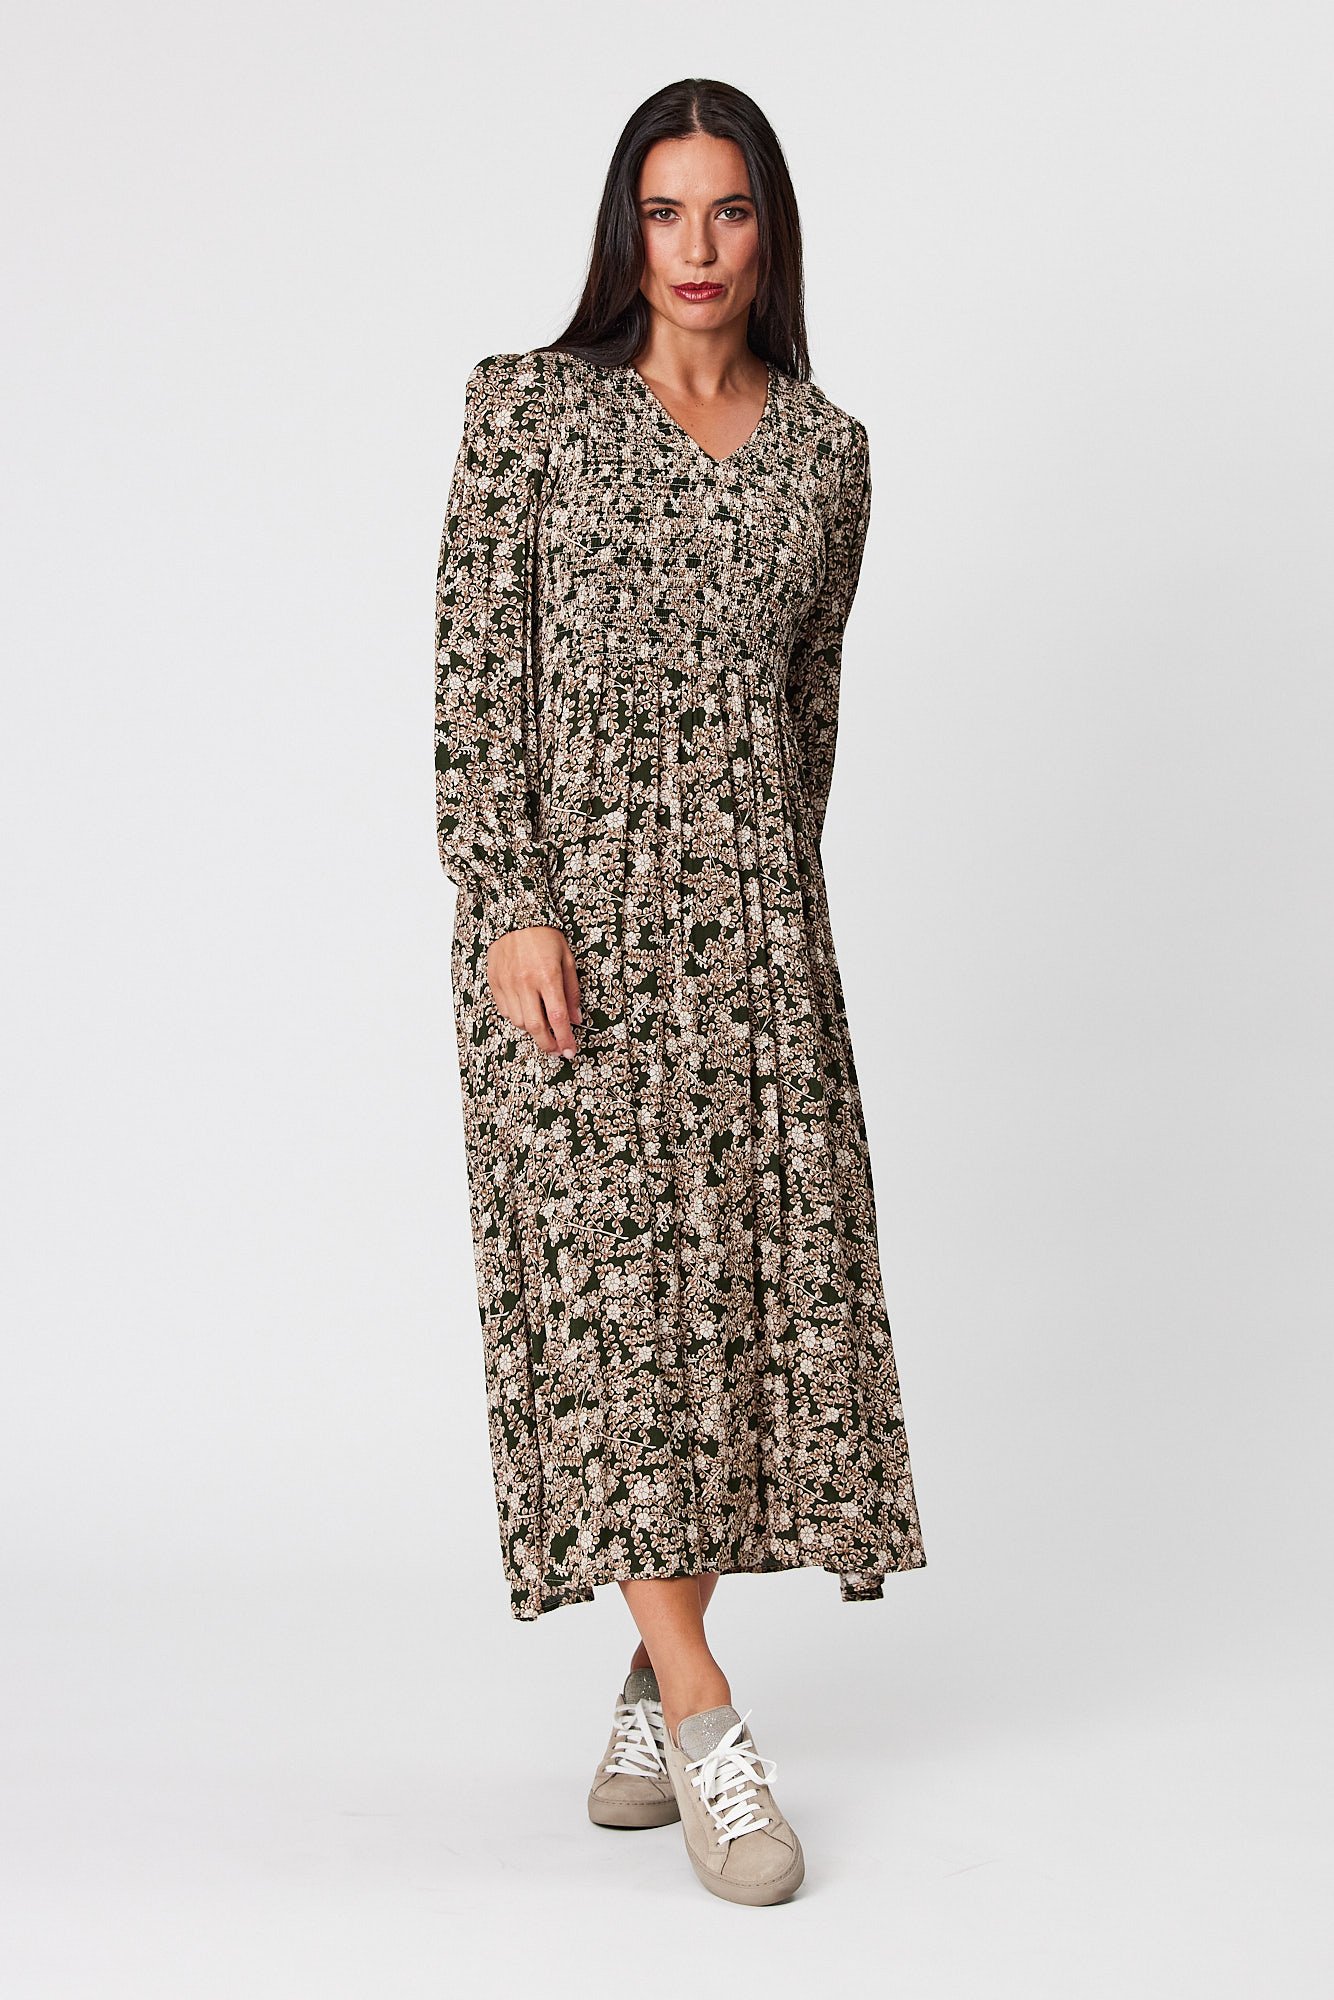 Shirred Bodice Dress - Blackstone Clothing | Buy Blackstone Clothing ...